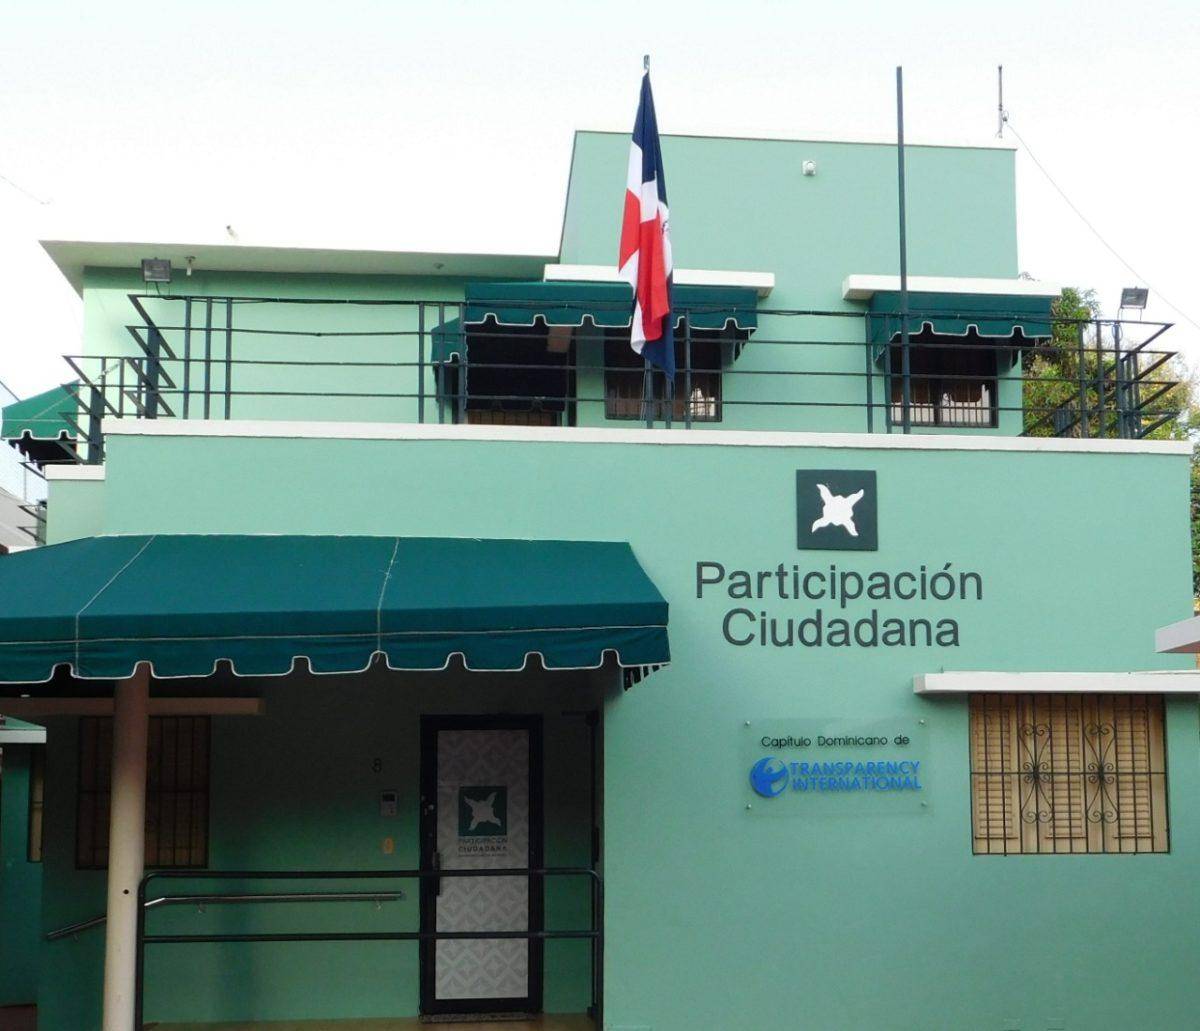 Participación Ciudadana pide auditoría a Punta Catalina sea forense